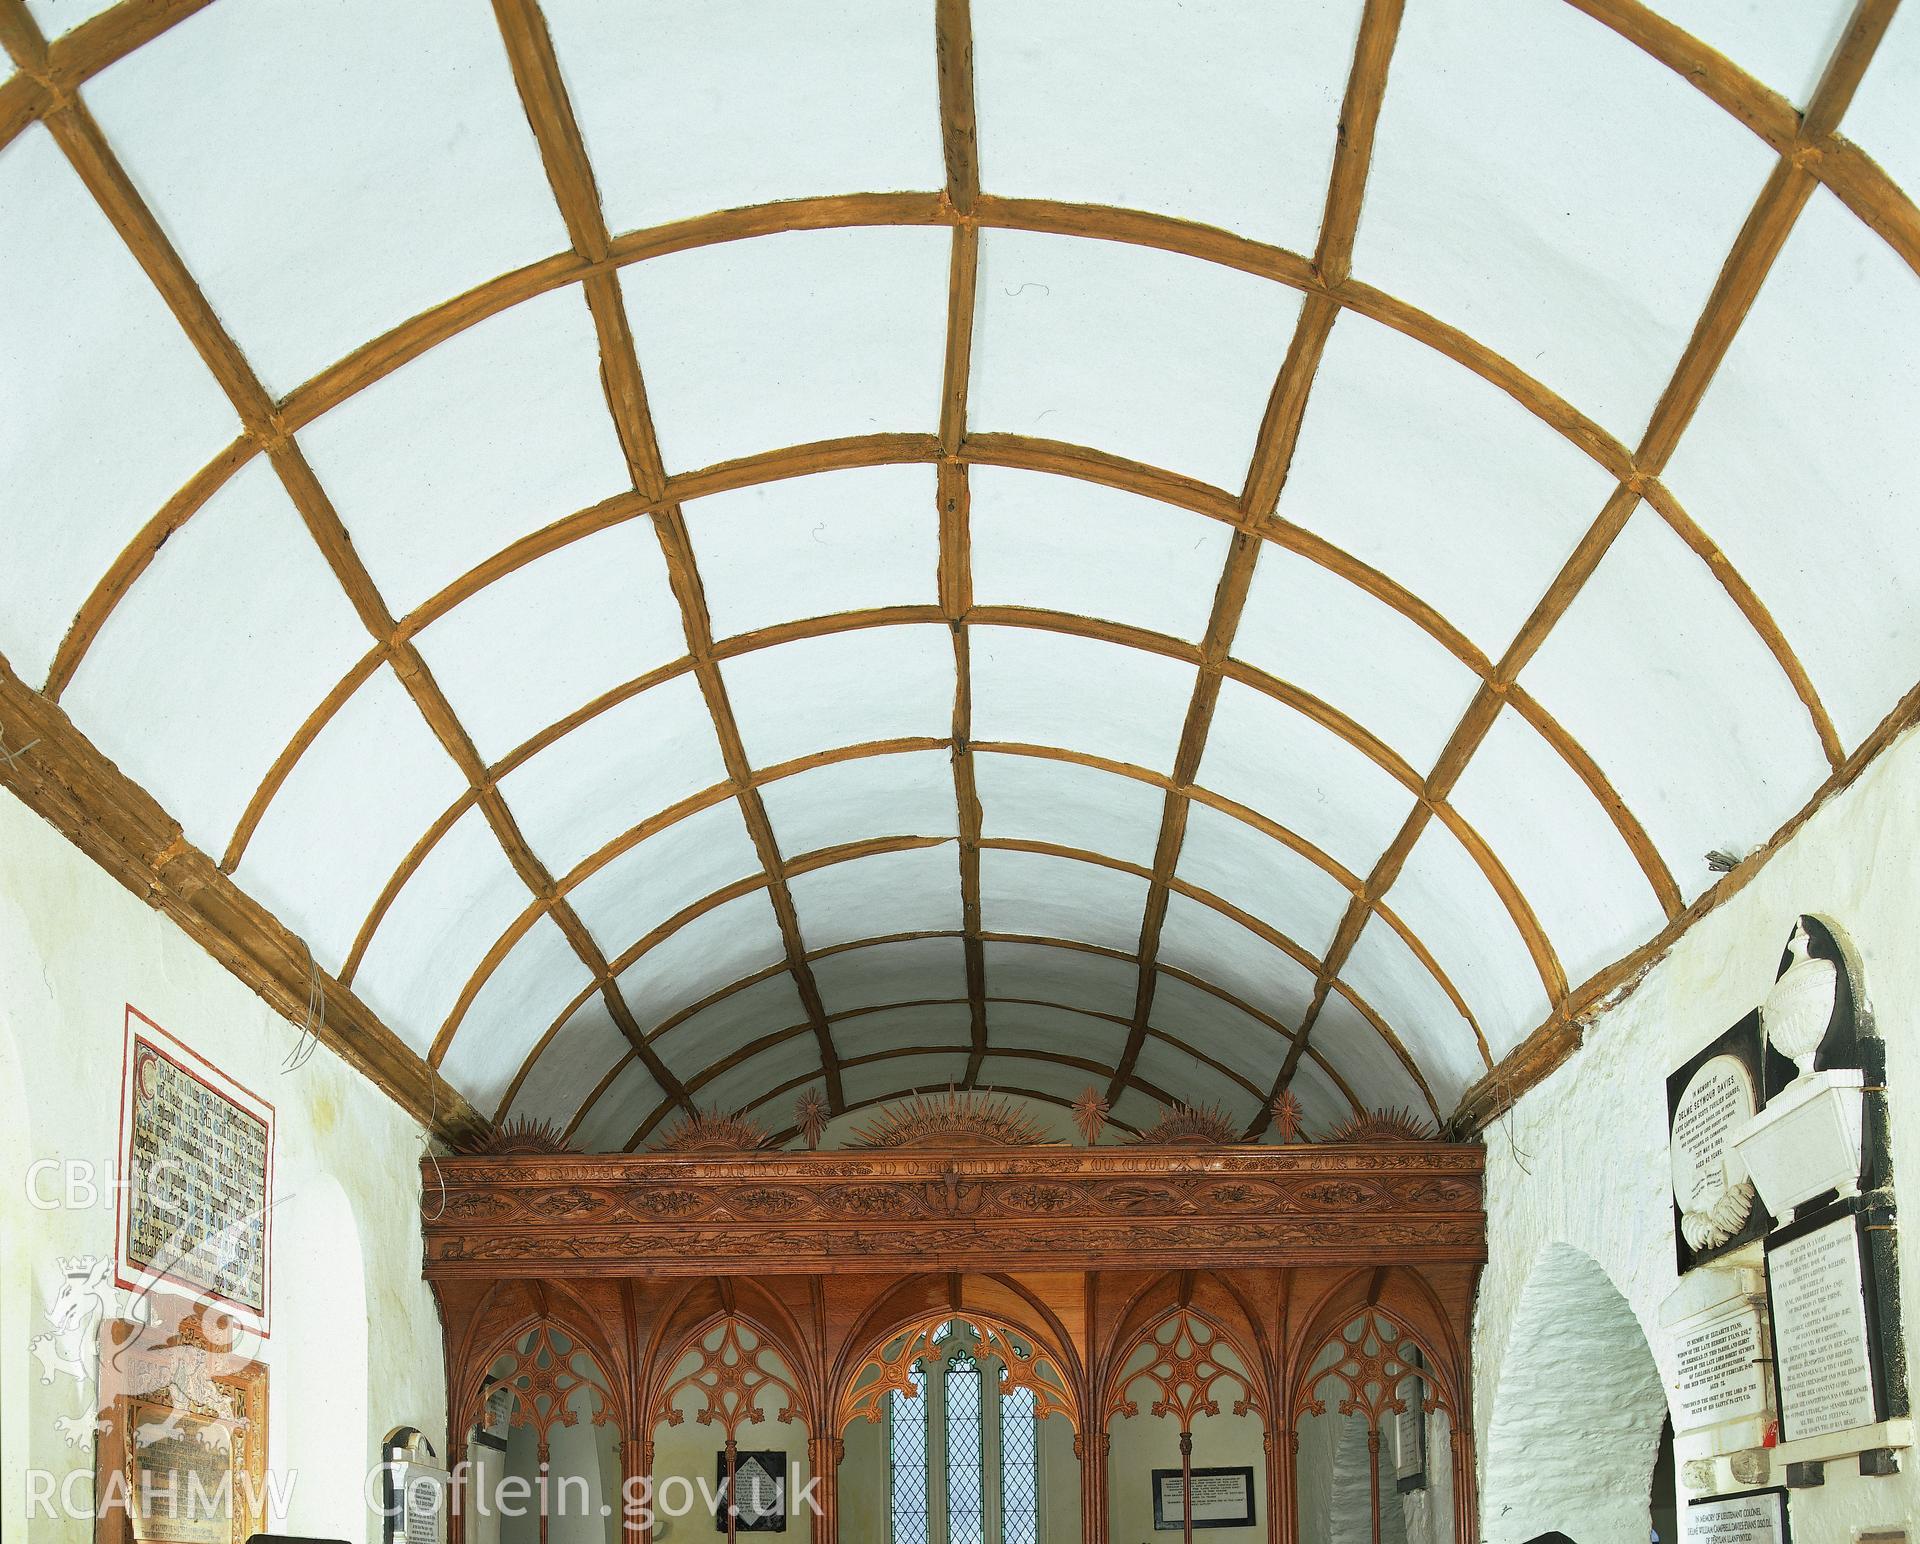 RCAHMW colour transparency showing ceiling at St Gwenog's Church, Llanwenog